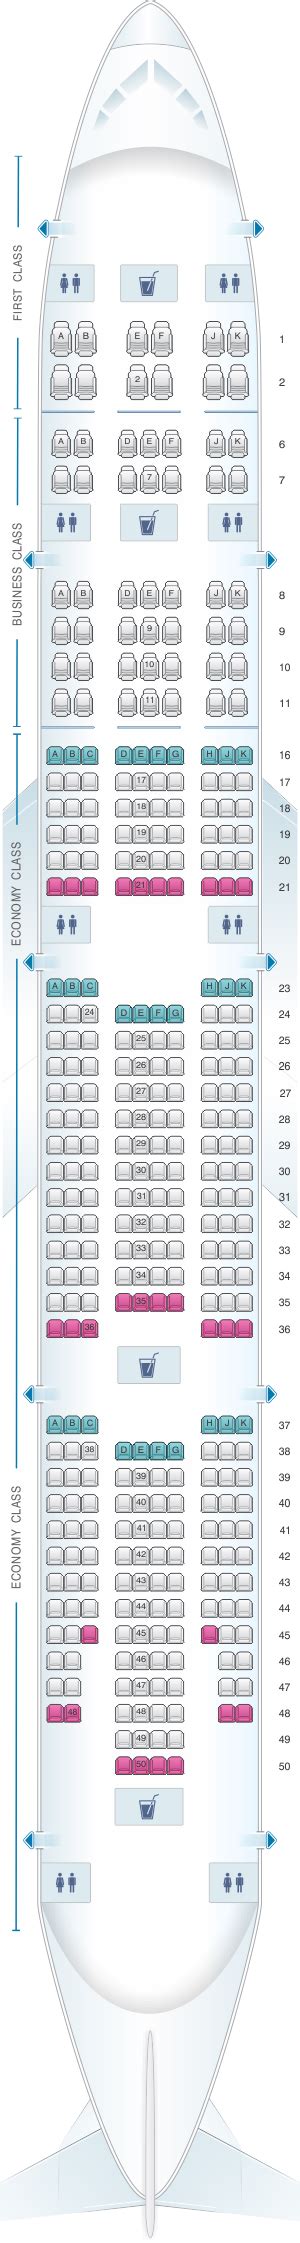 Emirates Boeing 777 300er Seat Map Seatguru Seat Map Air France